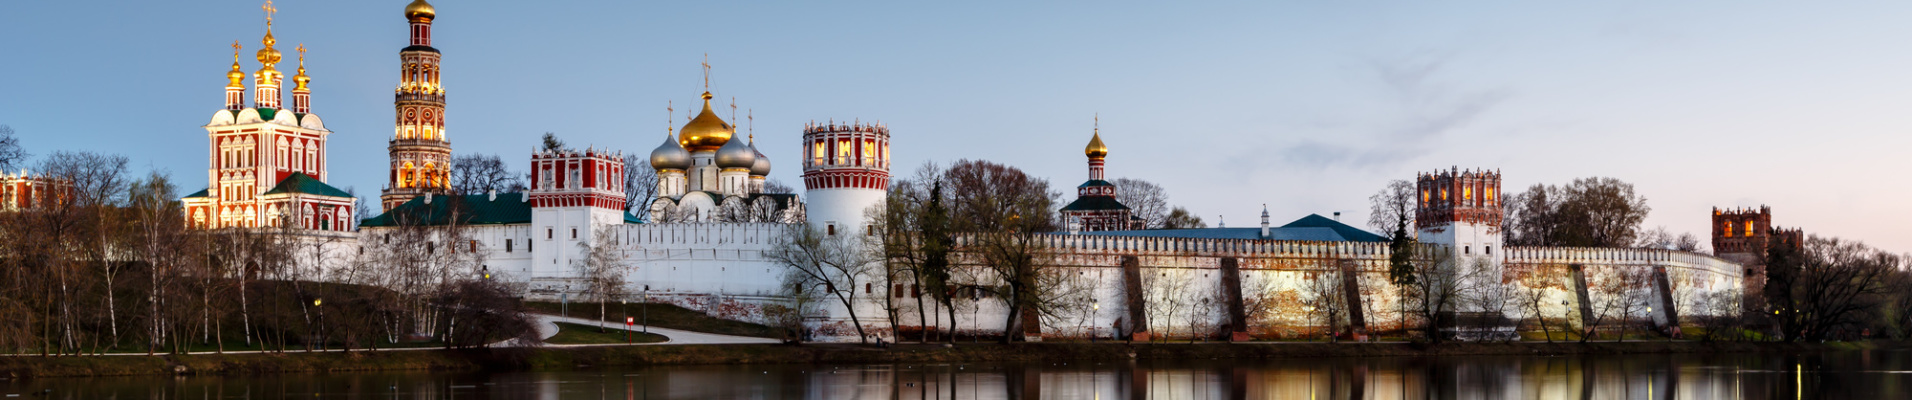 Vue sur le couvent Novodevichy, Moscou, Russie